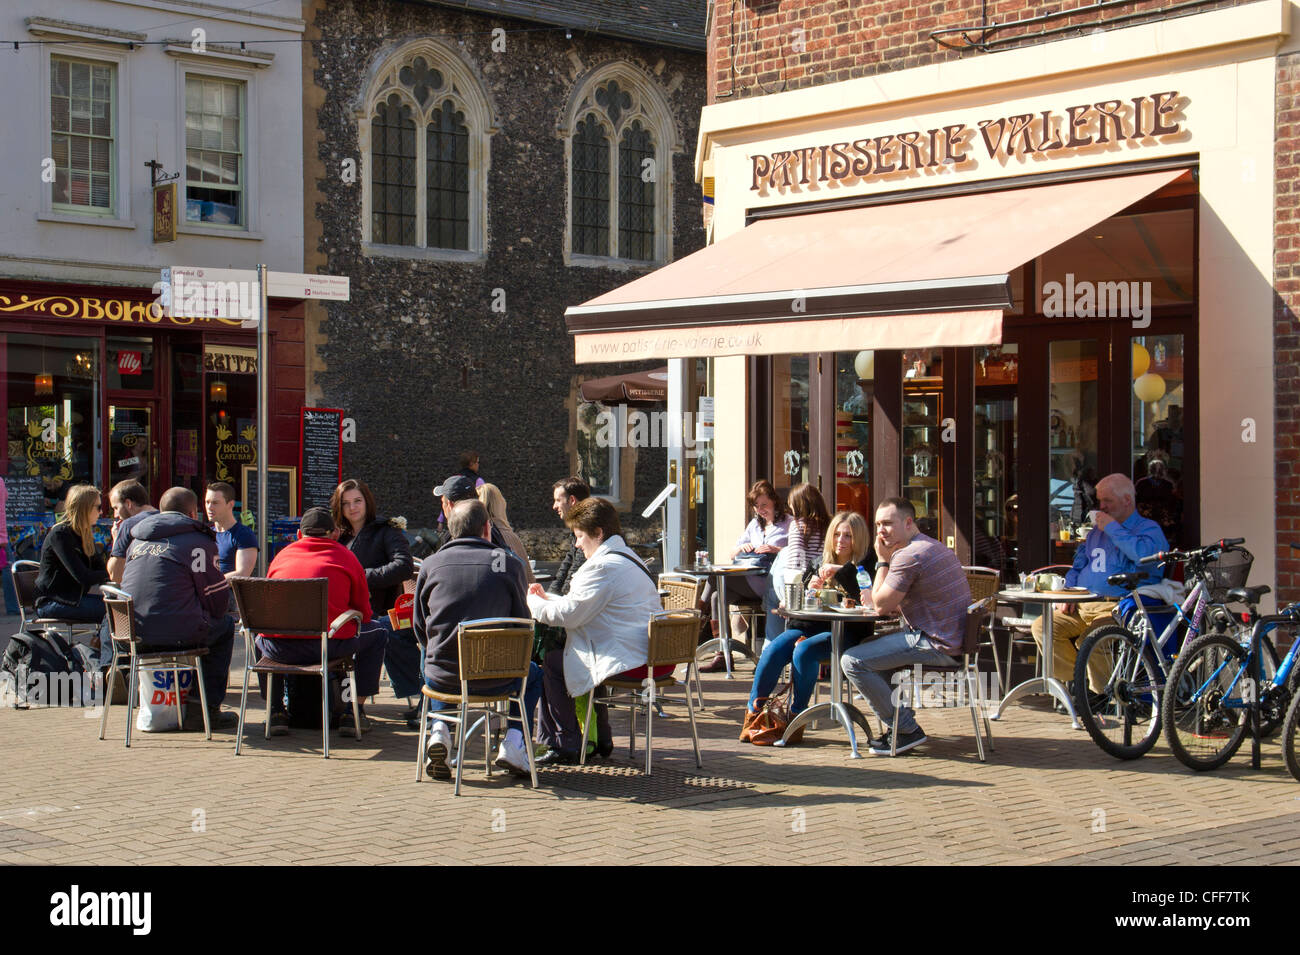 Canterbury UK Patisserie Valerie Coffee Gebäck Kuchen.  Kunden außerhalb Kaffeetrinken in der Sonne sitzen. Stockfoto